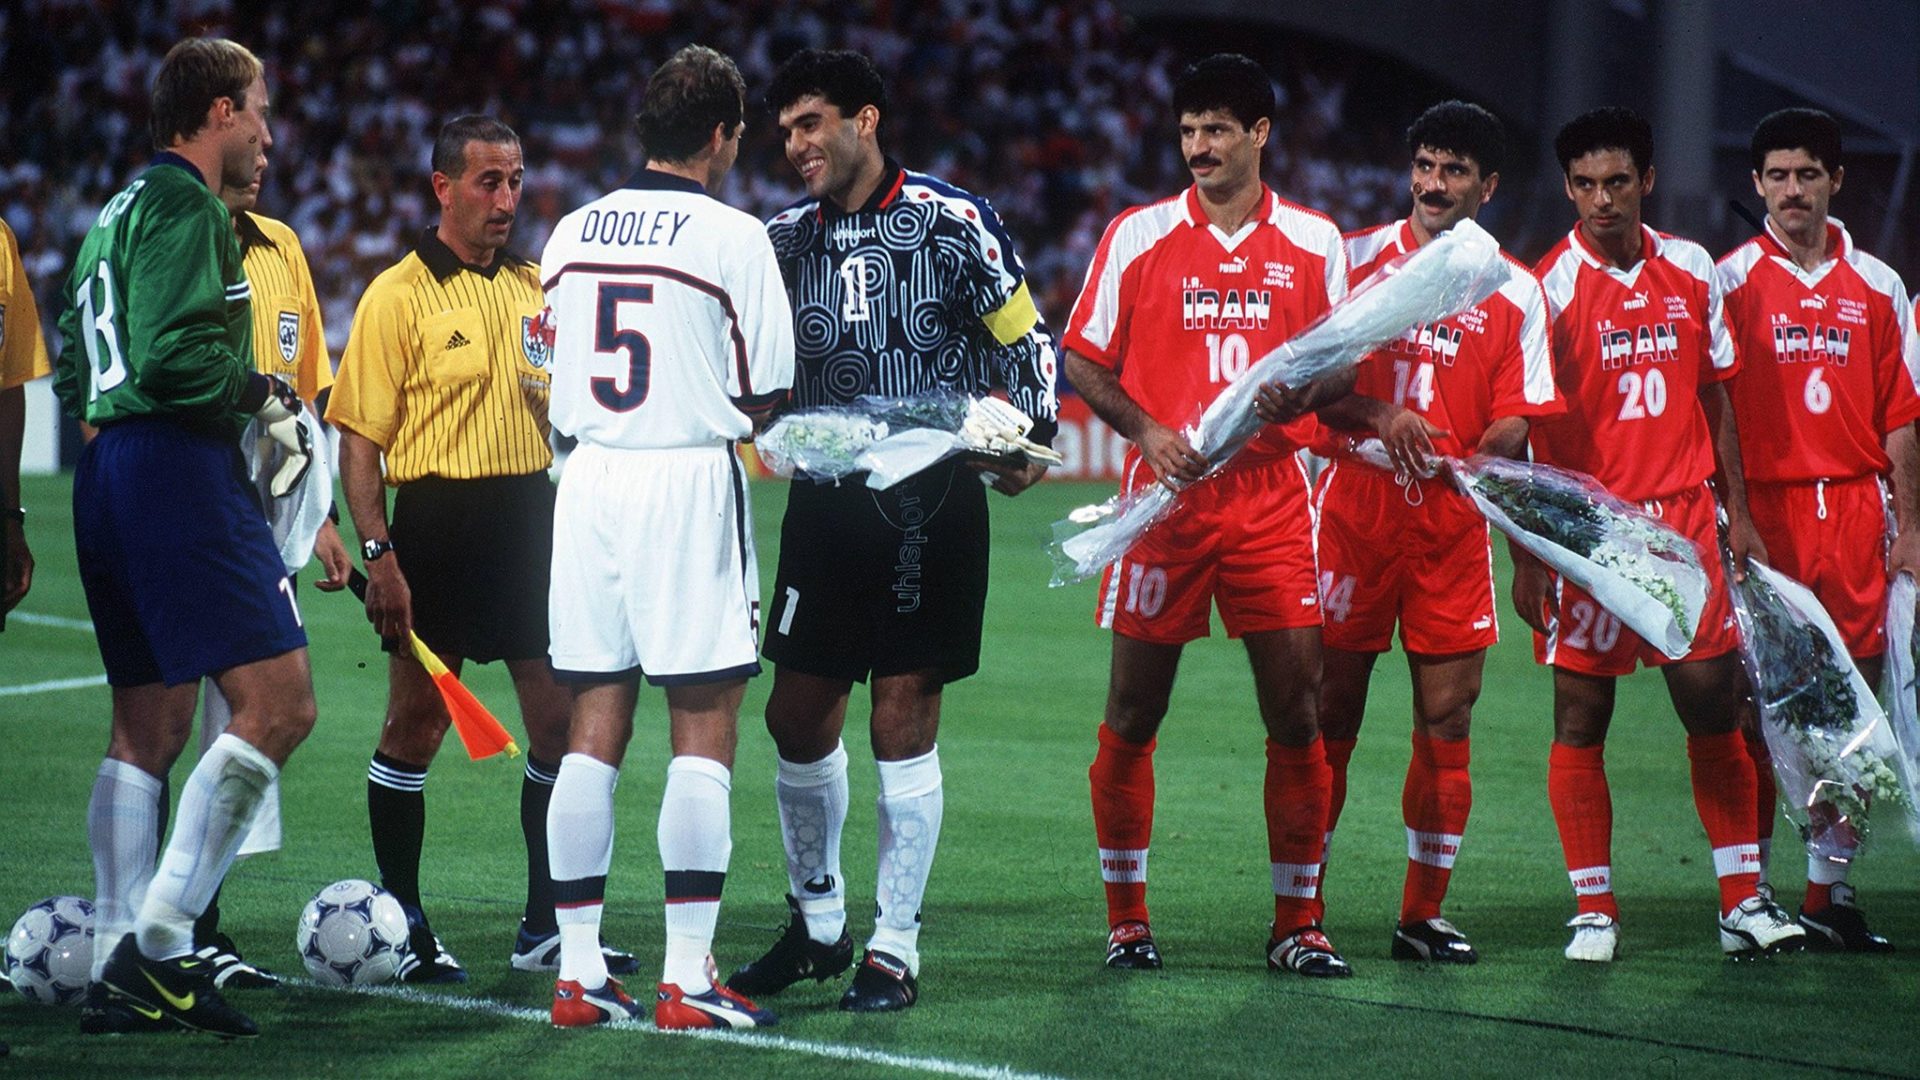 La pace val bene un gol”: Usa-Iran al Mondiale di calcio del 1998 - Opinio  Juris